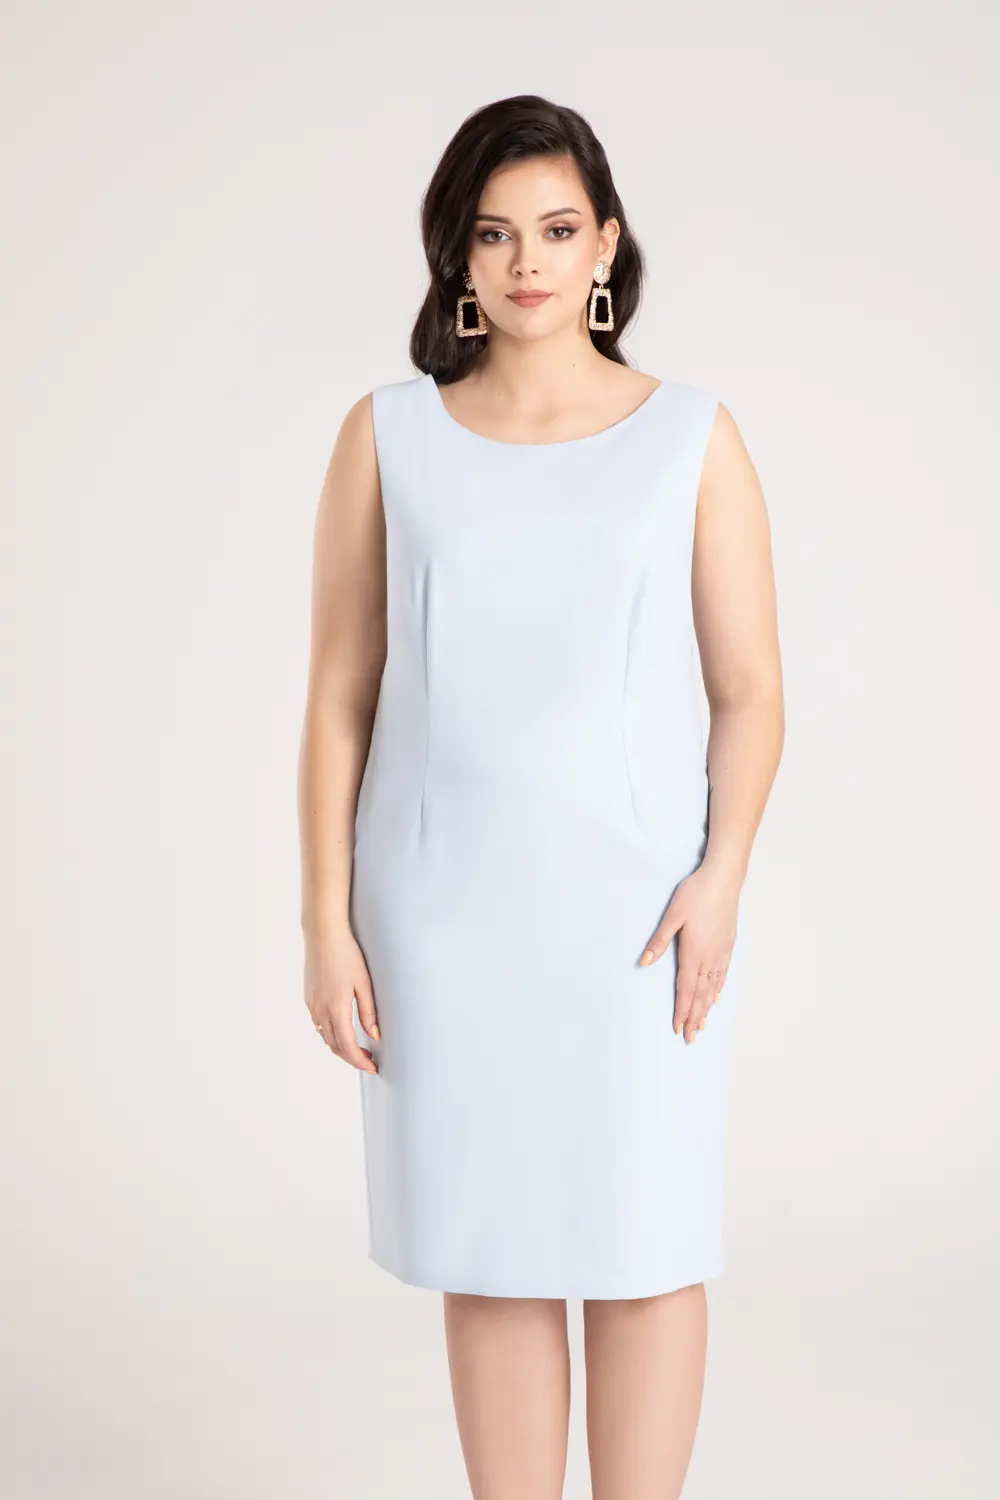 błękitna sukienka ołówkowa bez rękawków sukienka tuba polska marka